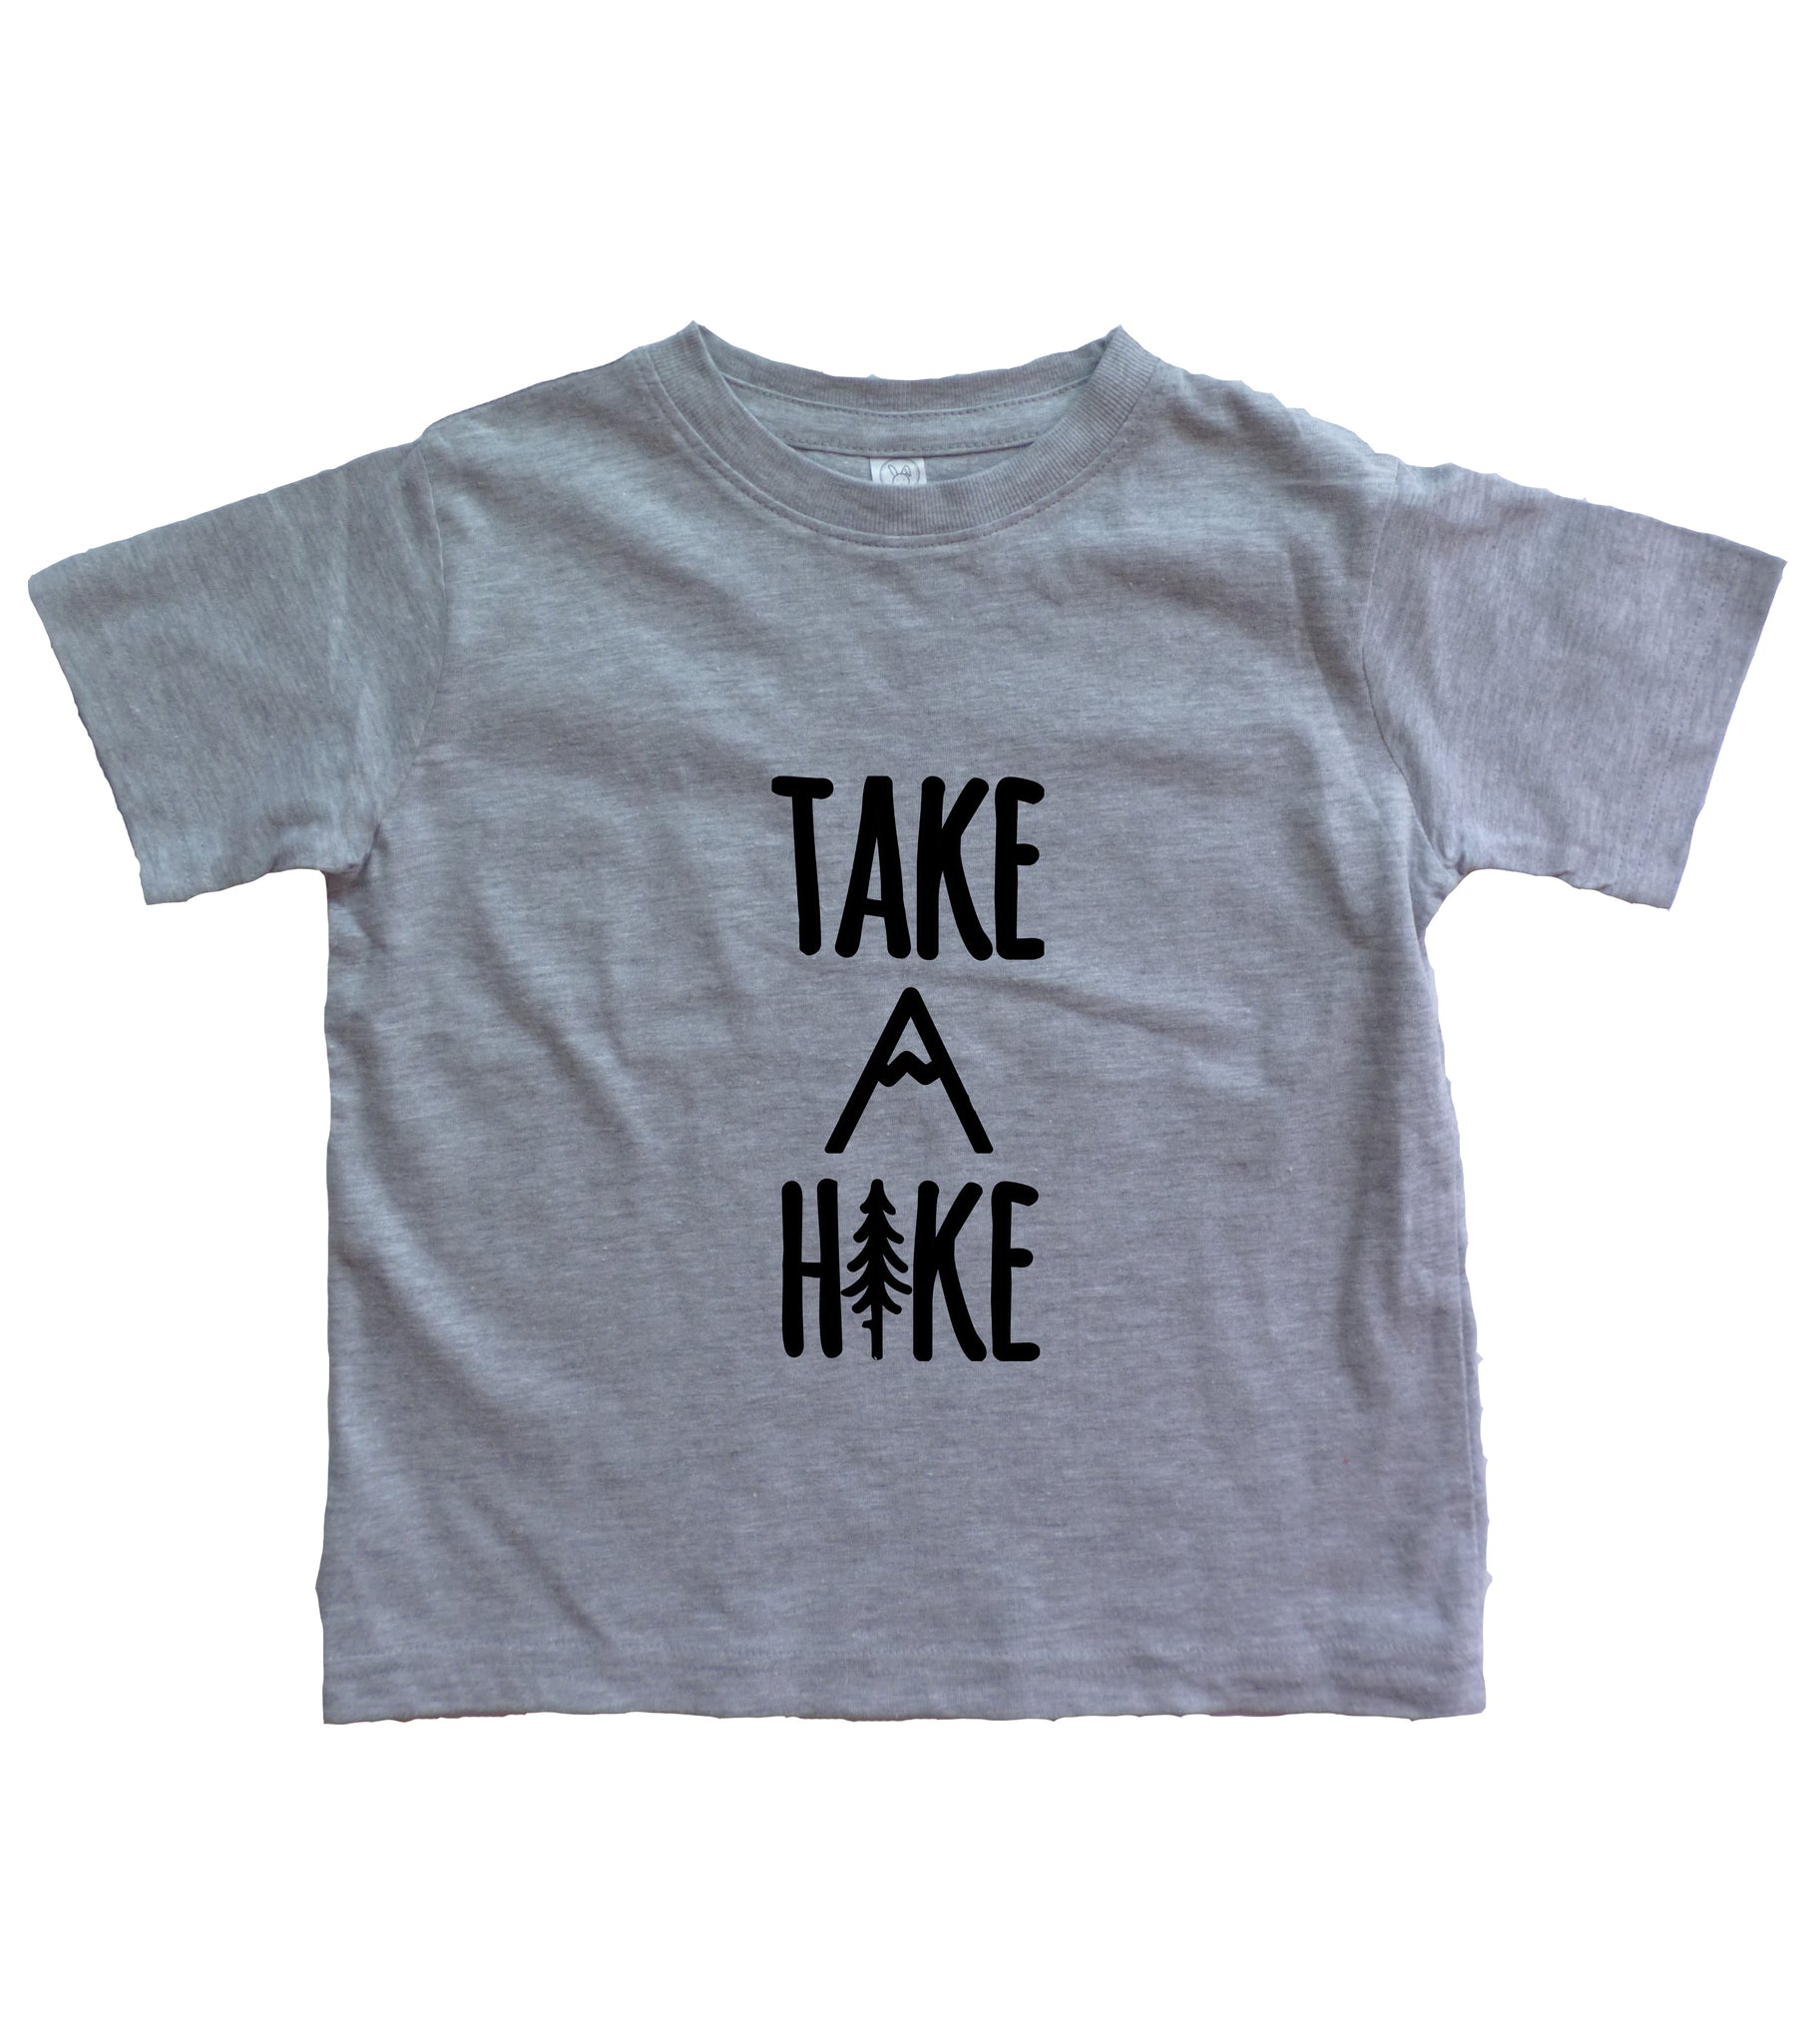 Take A Hike Infant Shirt Wholesale